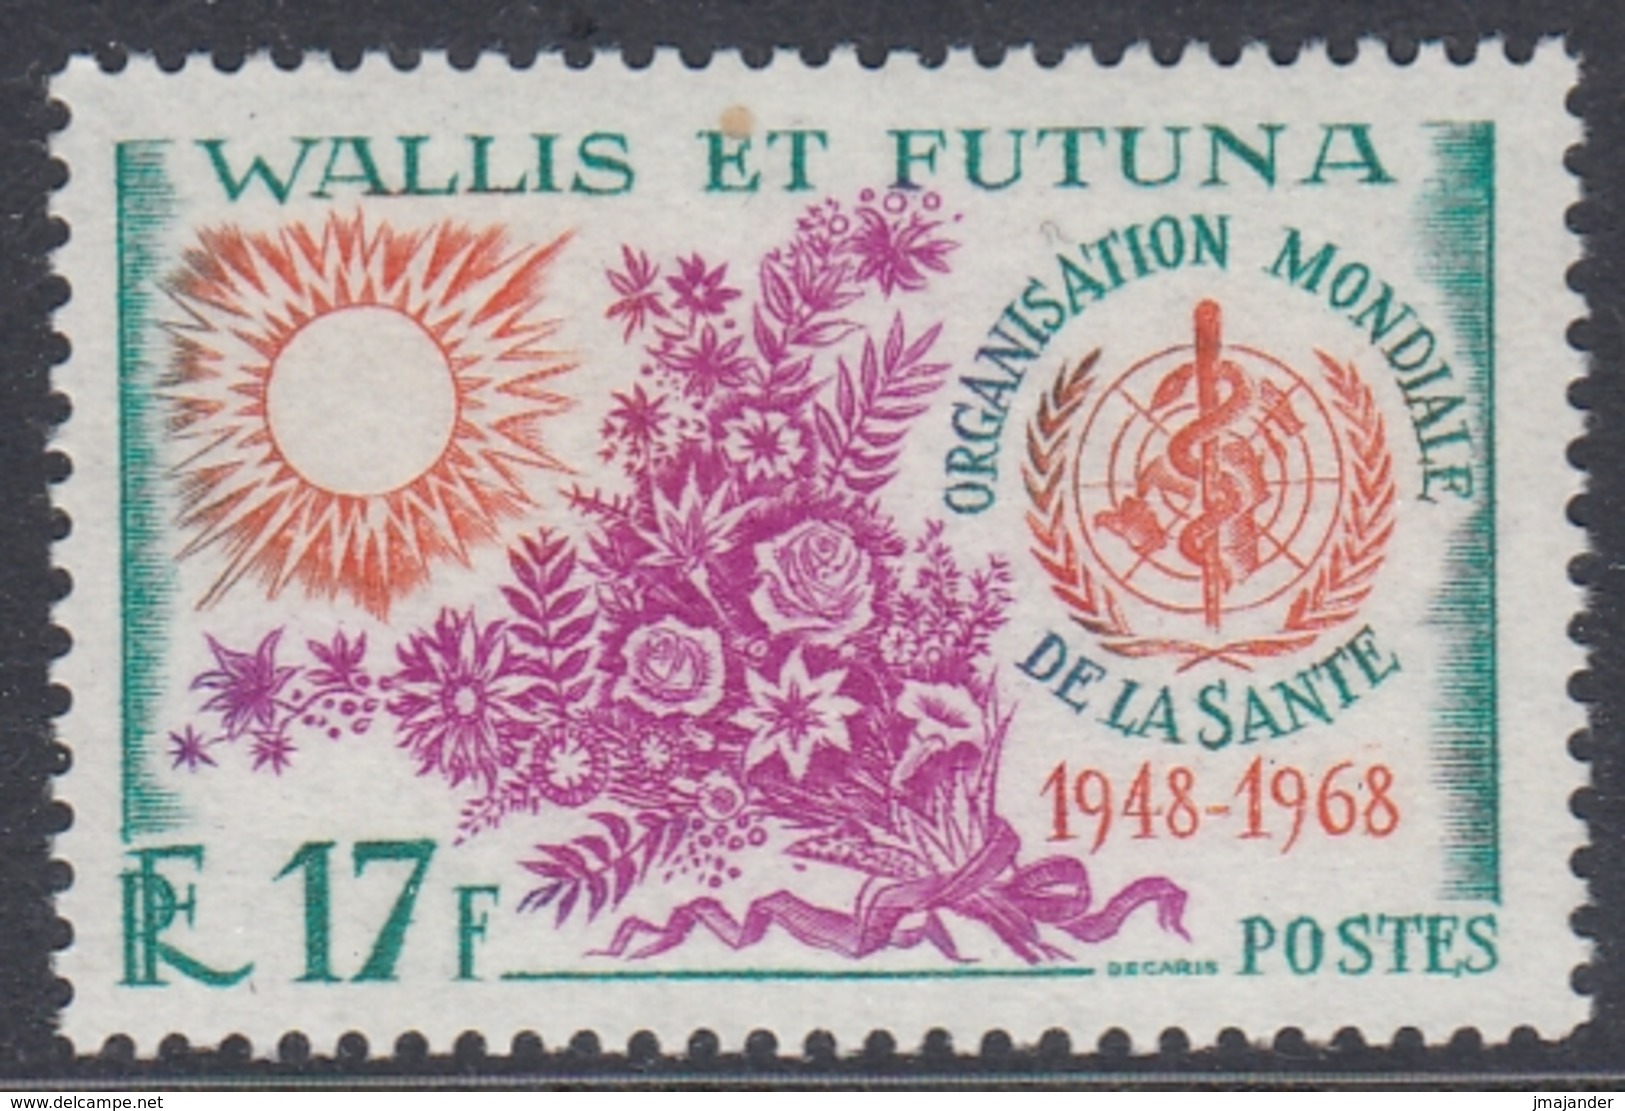 Wallis And Futuna 1968 - The 20th Anniversary Of WHO - Mi 217 ** MNH - Ongebruikt